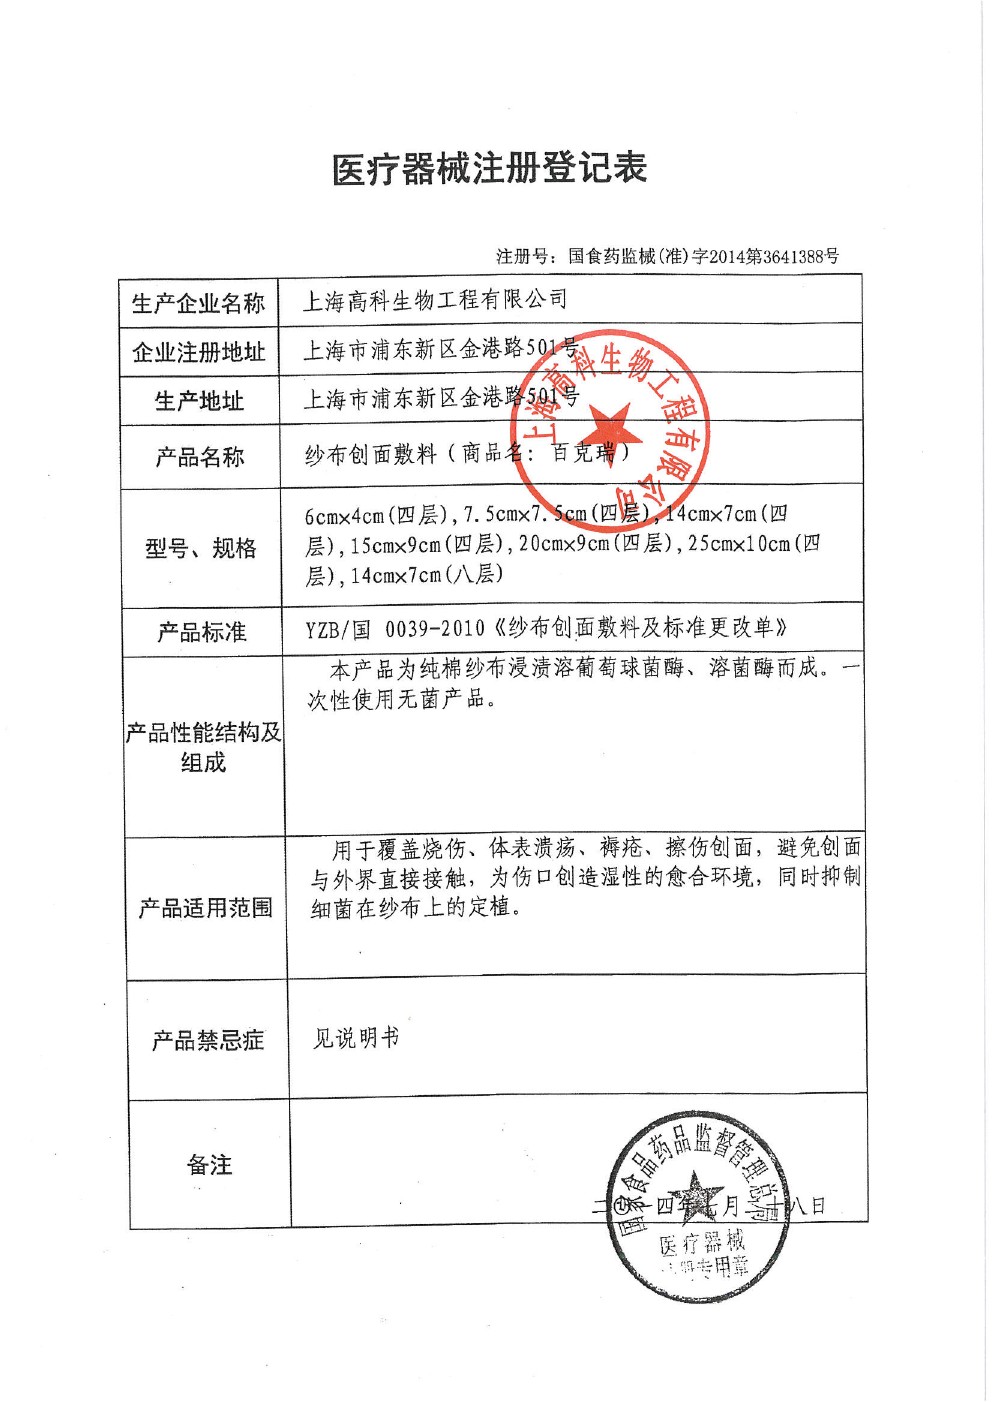 上海高科生物-医疗器械注册证